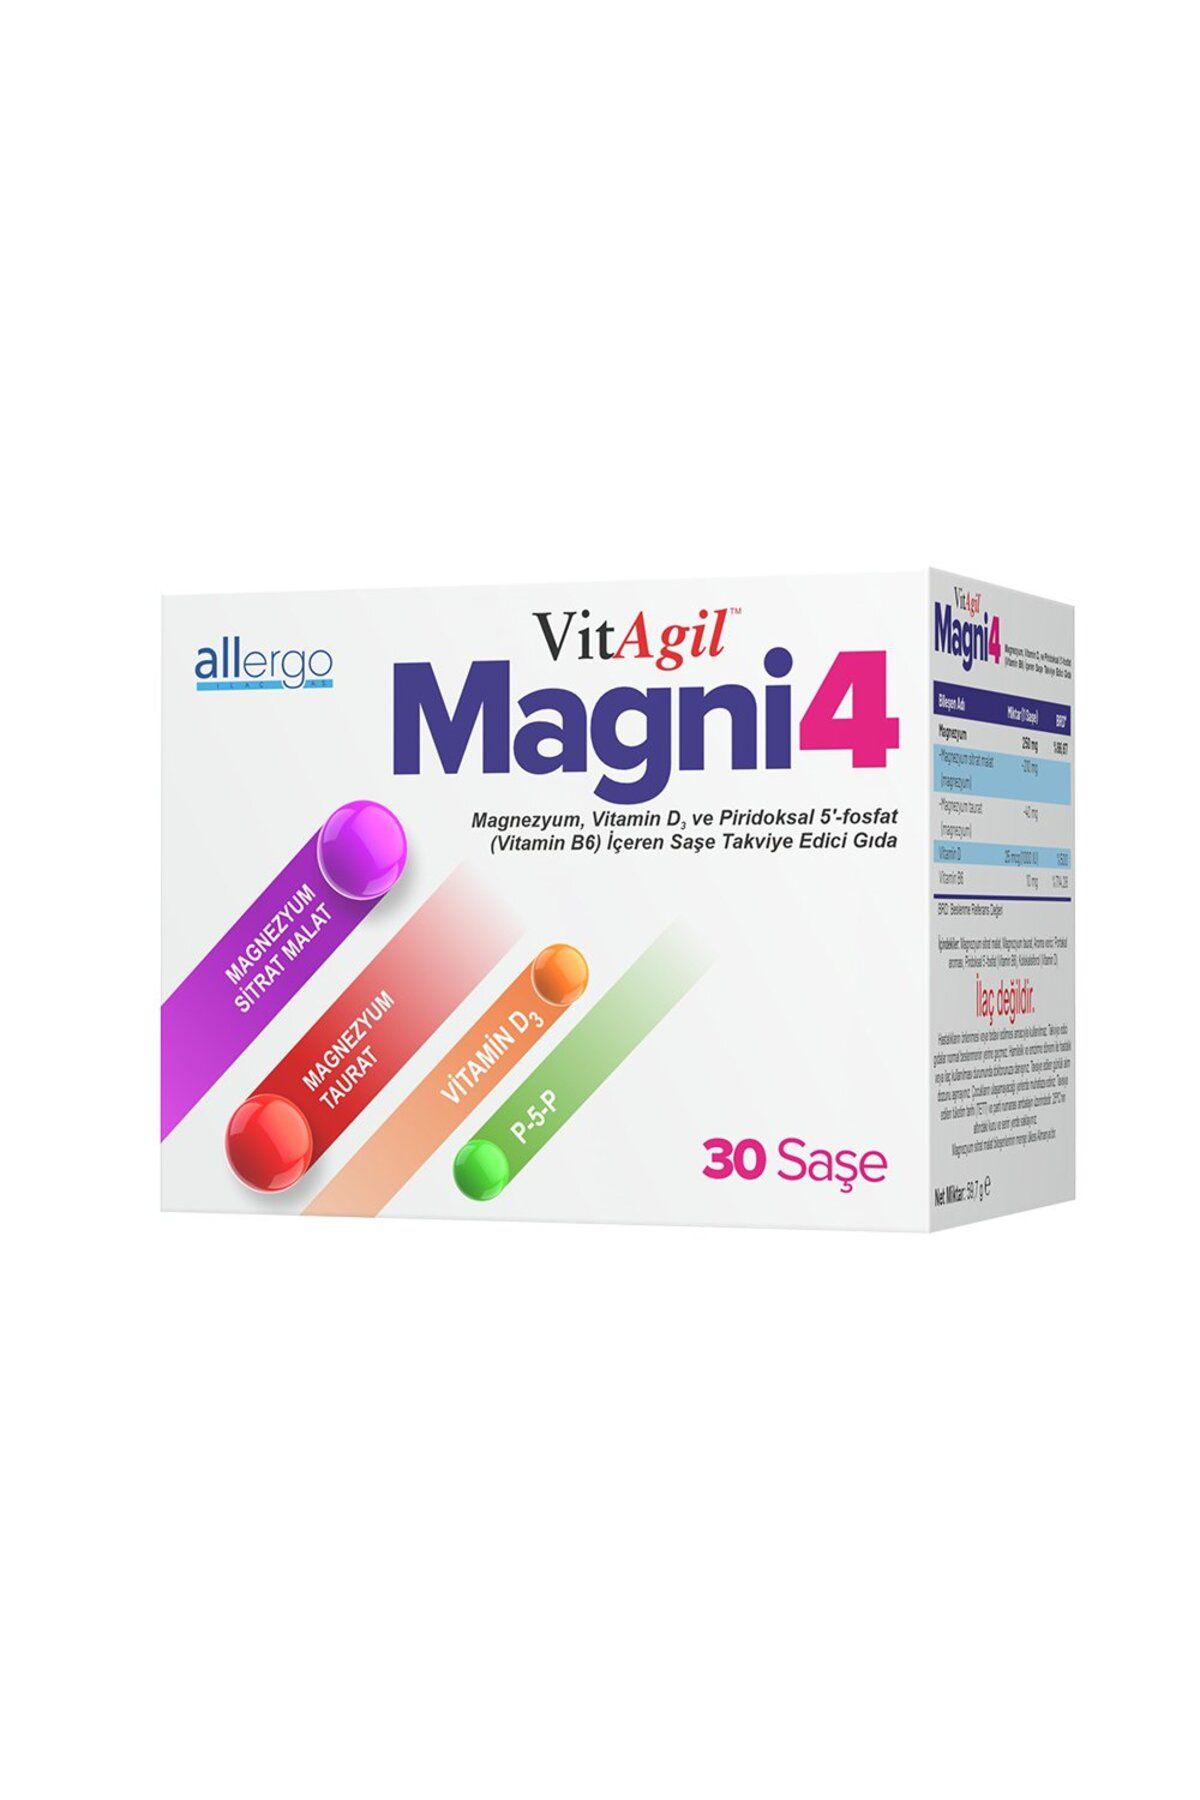 Allergo VitAgil Magni4 Magnezyum, Vitamin D3 ve Vitamin B6 İçeren 30 Saşe Takviye İçeren Gıda